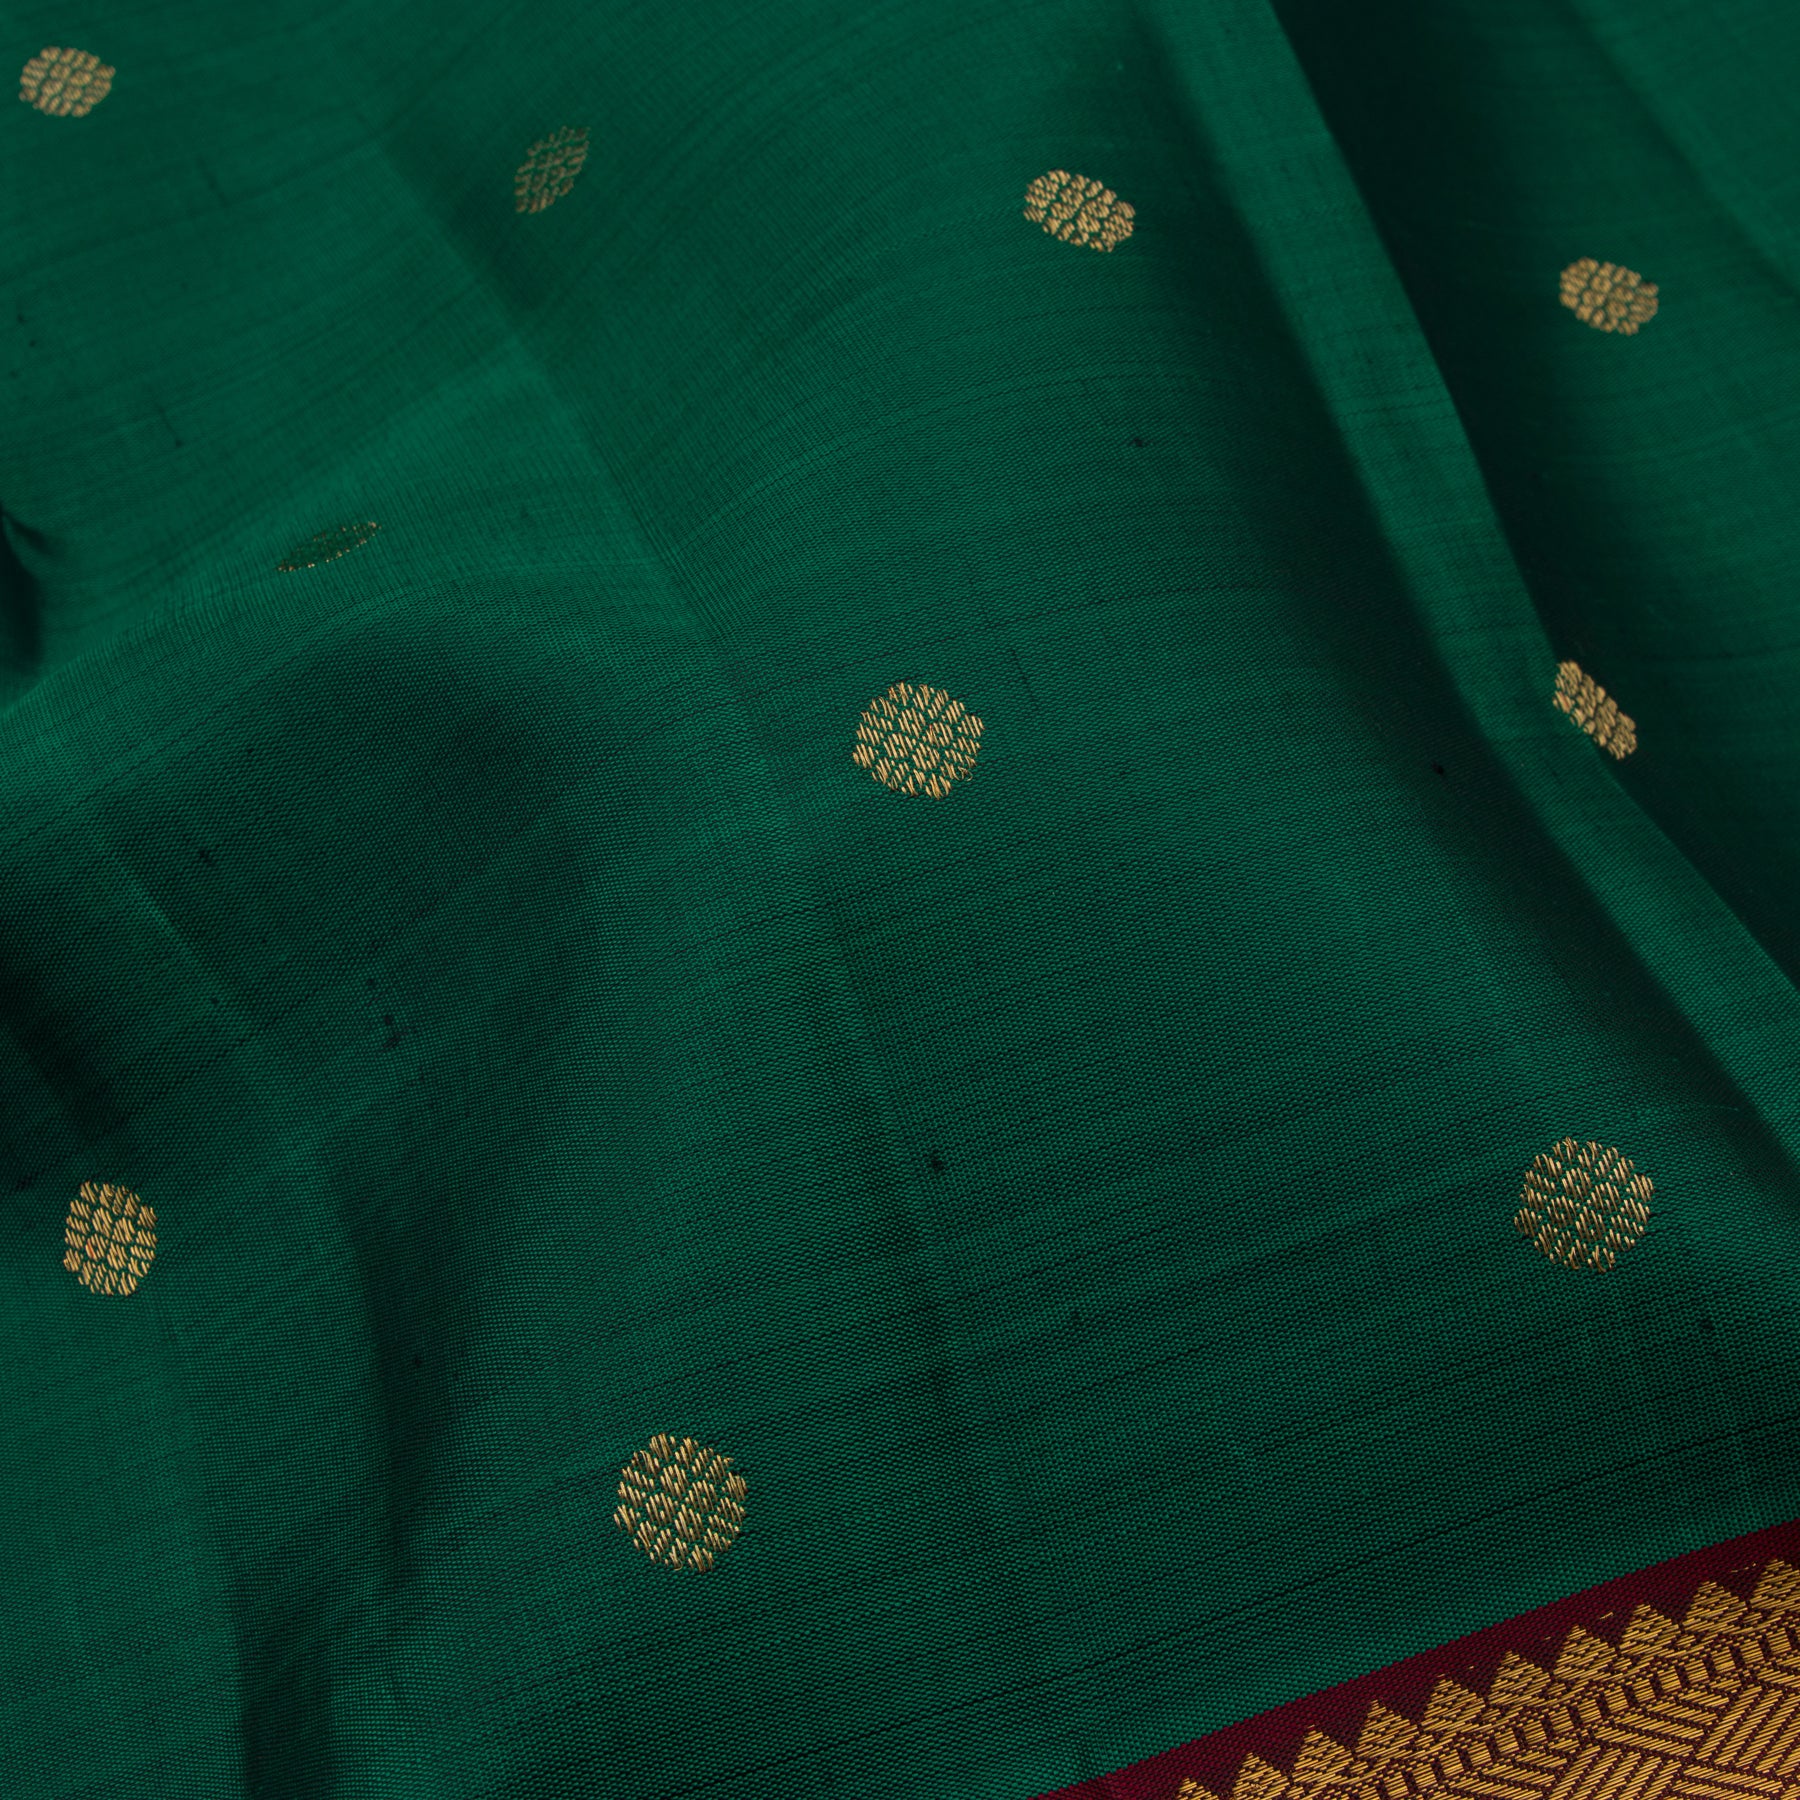 Kanakavalli Kanjivaram Silk Sari 23-110-HS001-02988 - Fabric View